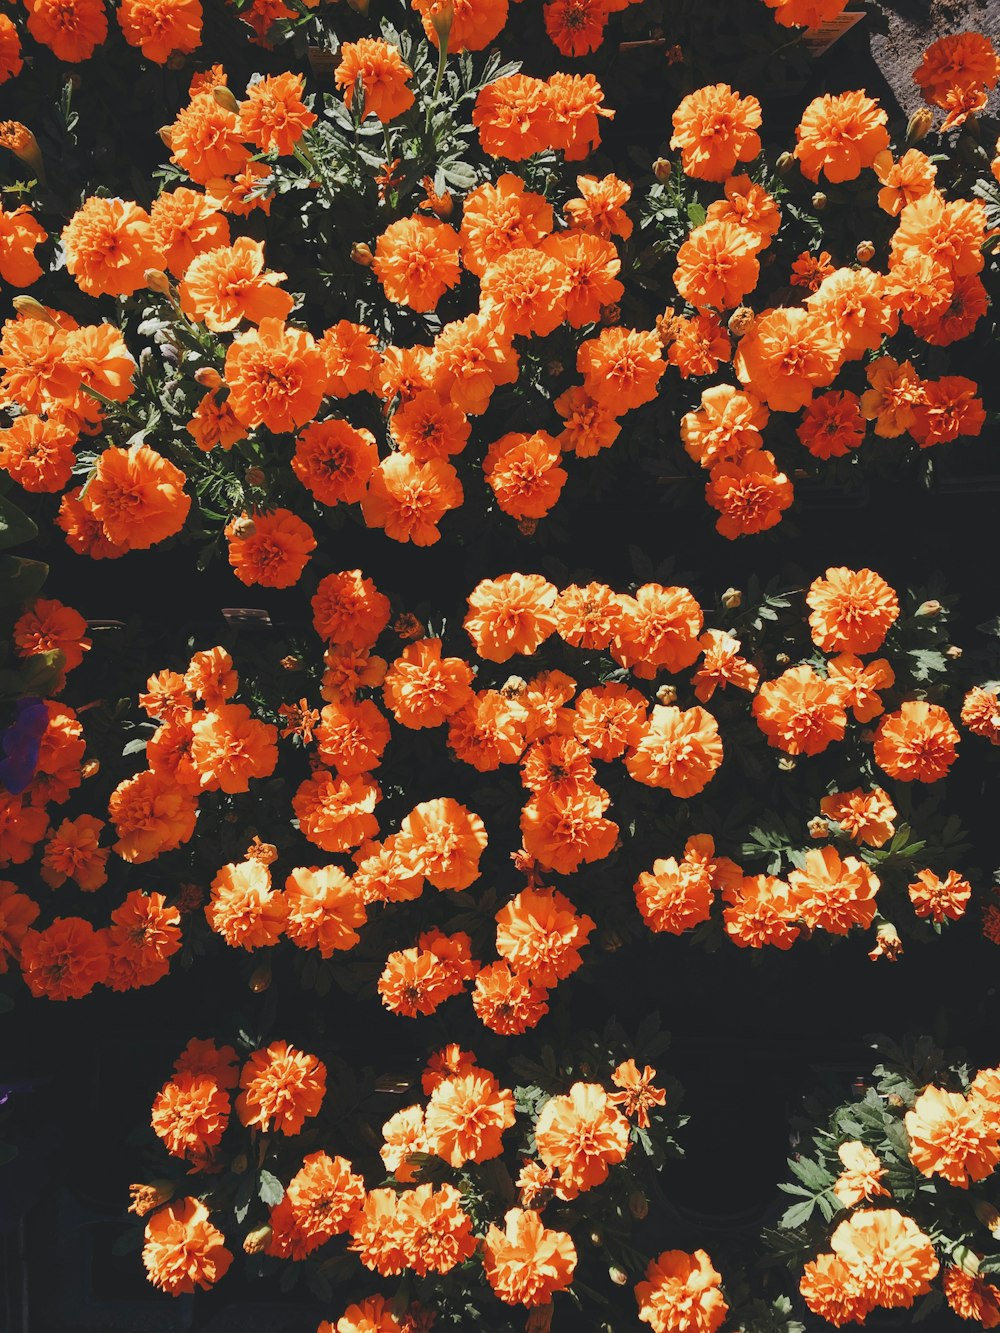 flores florecientes de pétalos de naranja durante el día